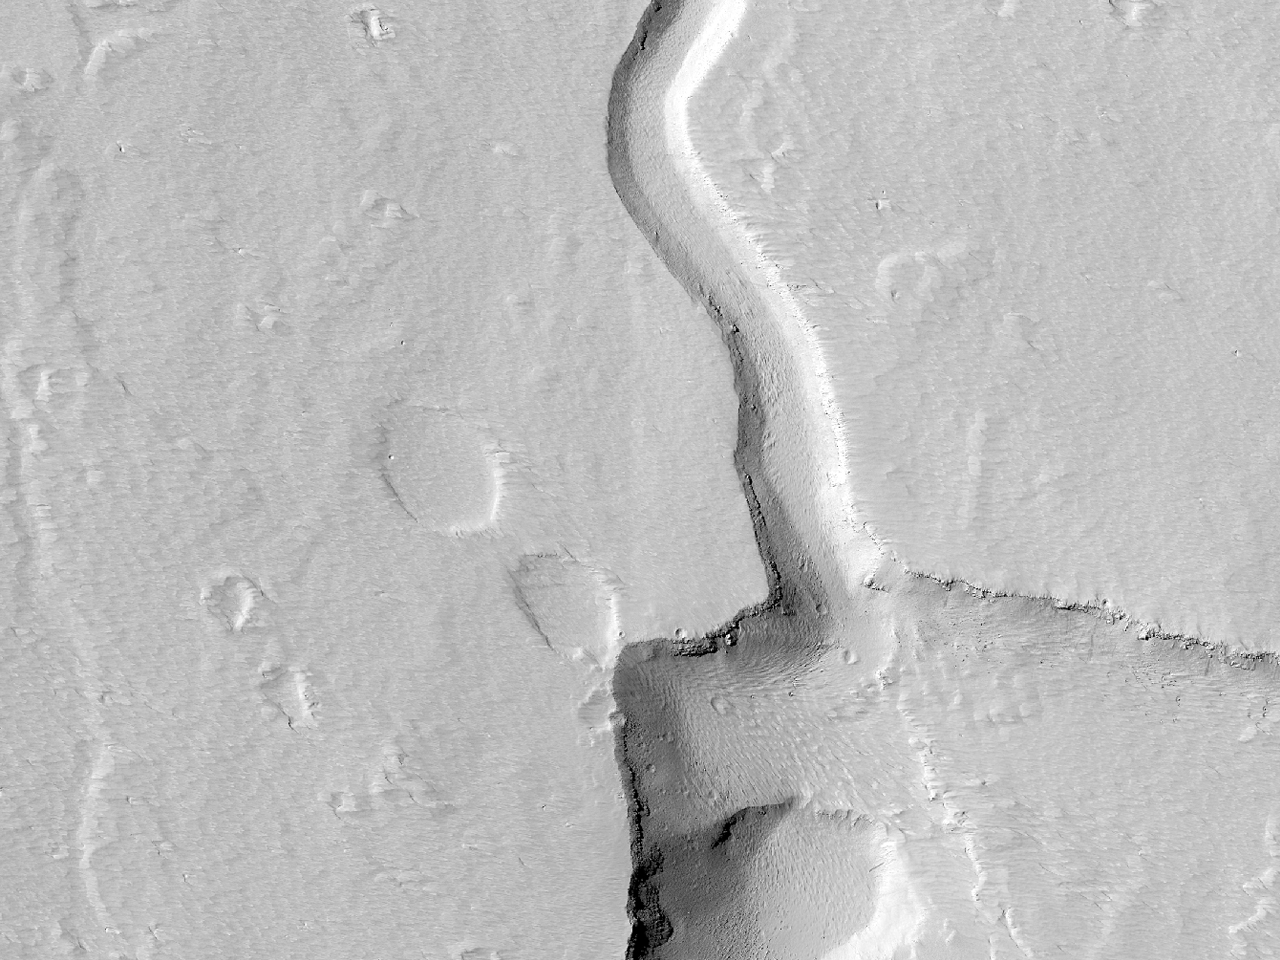 Gruben und Kanle an der Ostflanke des Ascraeus Mons